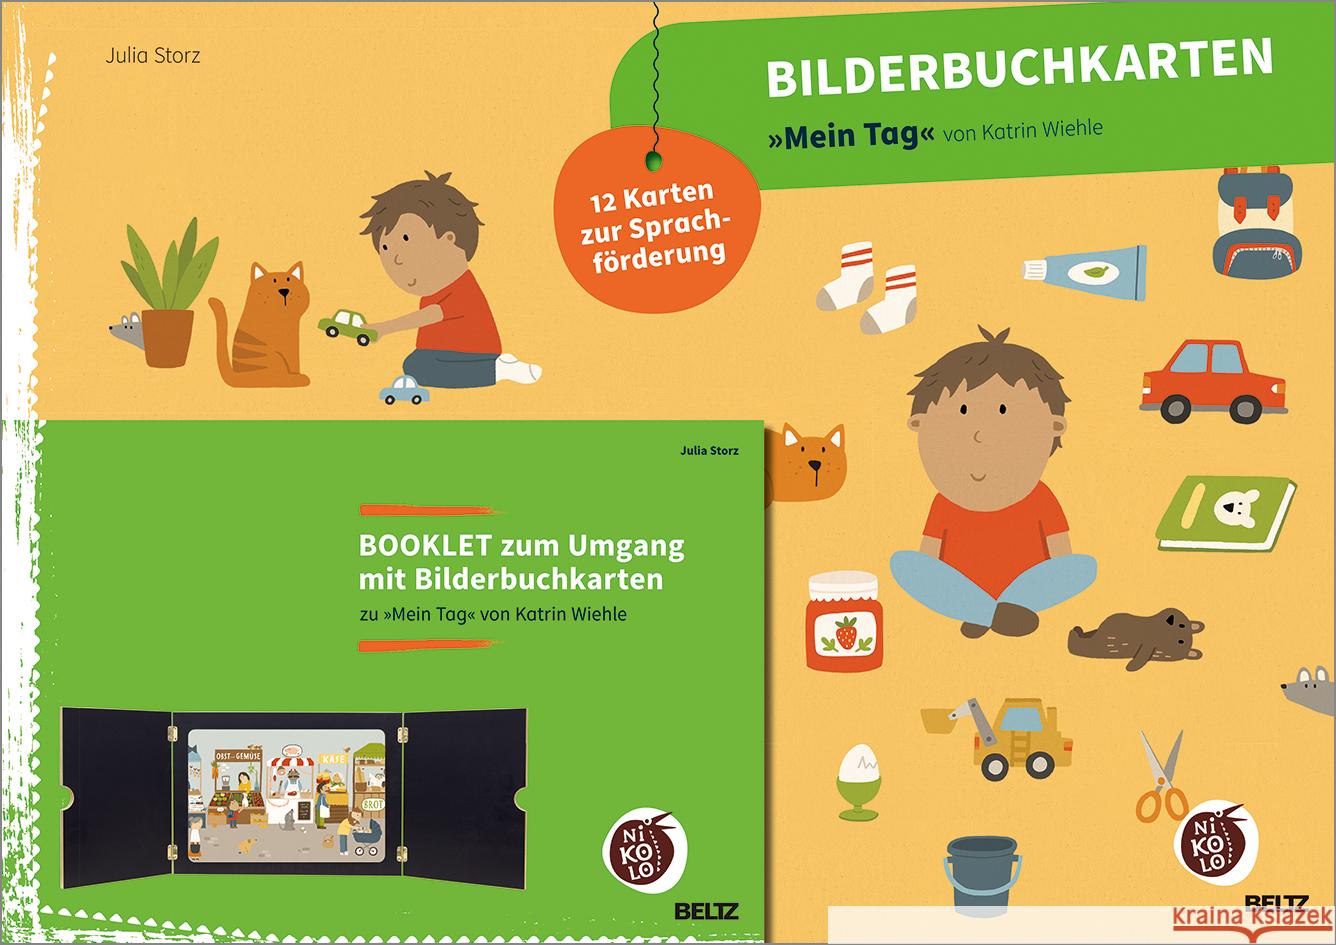 Bilderbuchkarten »Mein Tag« von Katrin Wiehle Storz, Julia 4019172600143 Beltz - książka